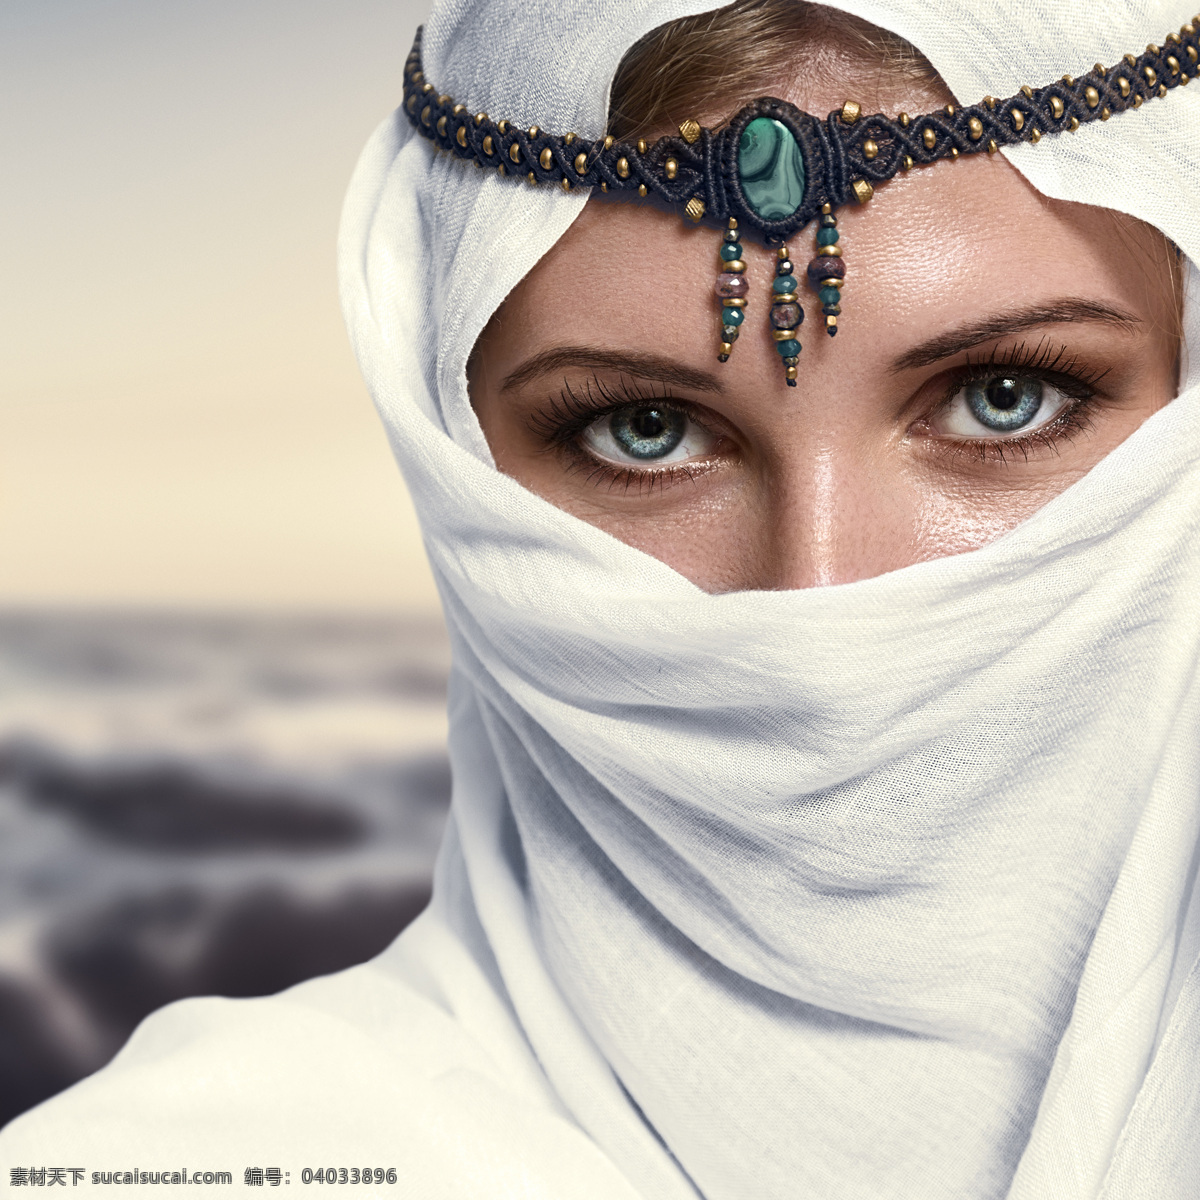 围着 白色 头巾 时尚 女性 阿拉伯女性 伊朗女性 外国女性 蒙面 装扮 女人 美女图片 人物图片